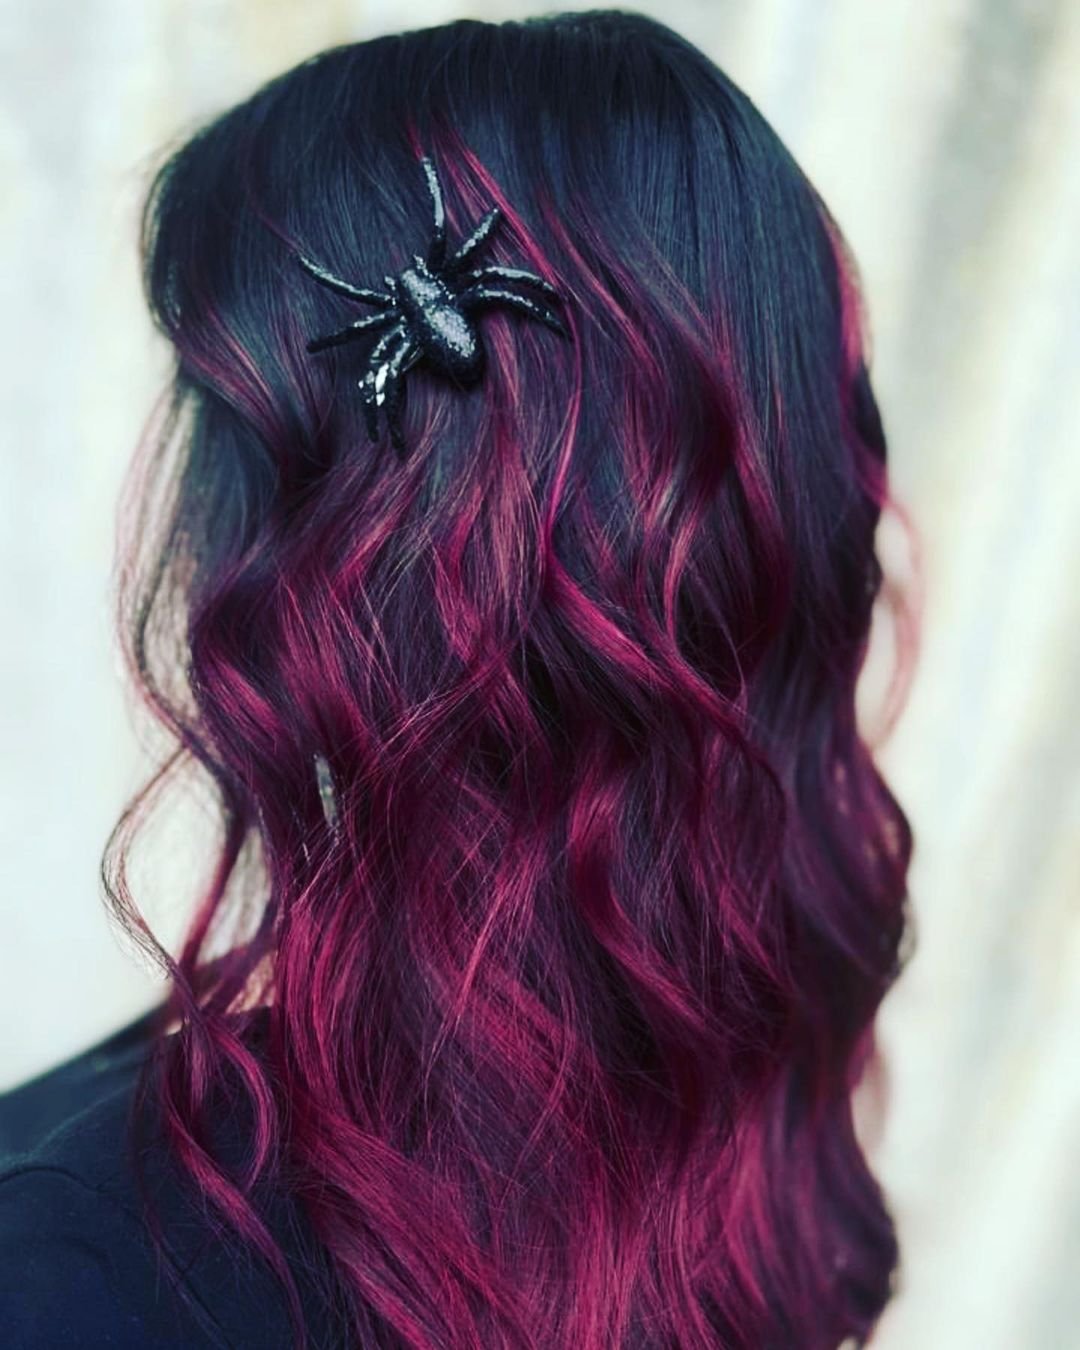 Fioletowe włosy ze spinkami w kształcie pająka